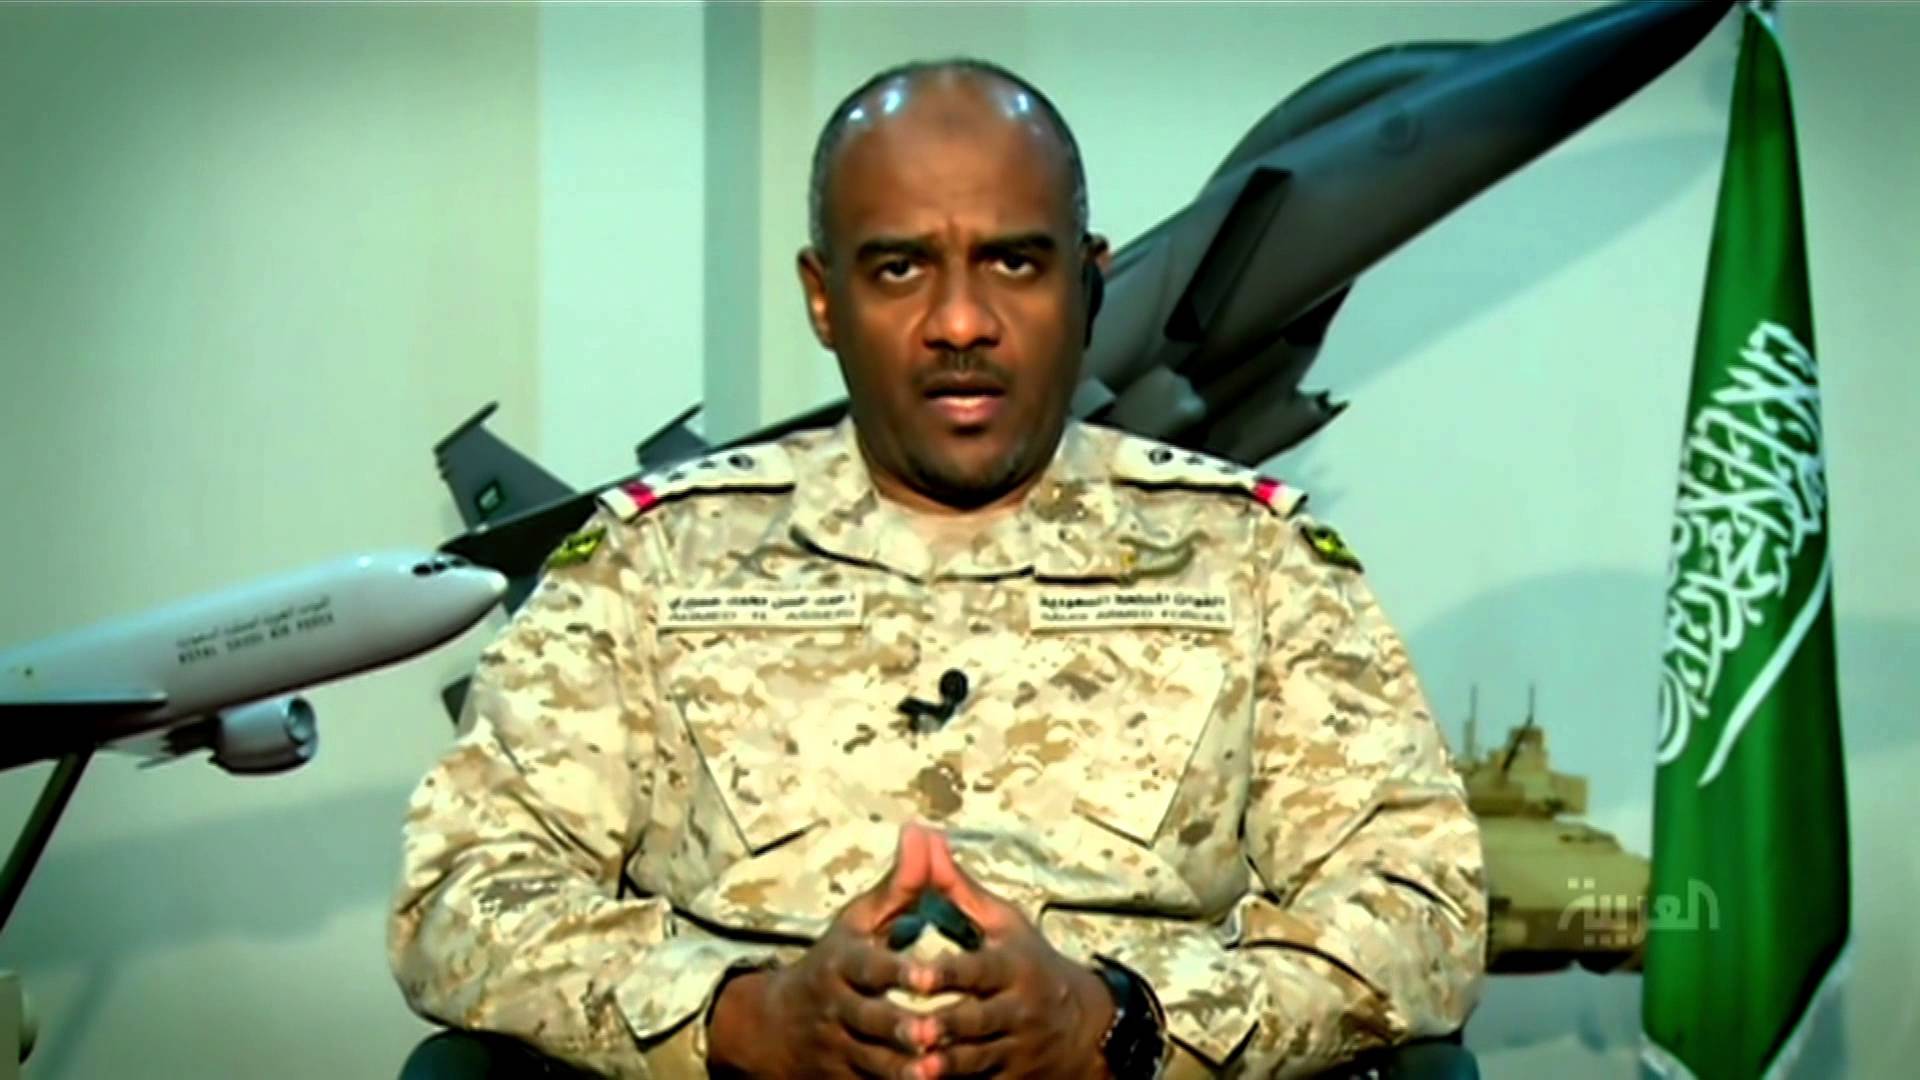 اللواء أحمد عسيري يعلن شرط التحالف الوحيد للقبول بأي اتفاق سلام مع الحوثيين في اليمن